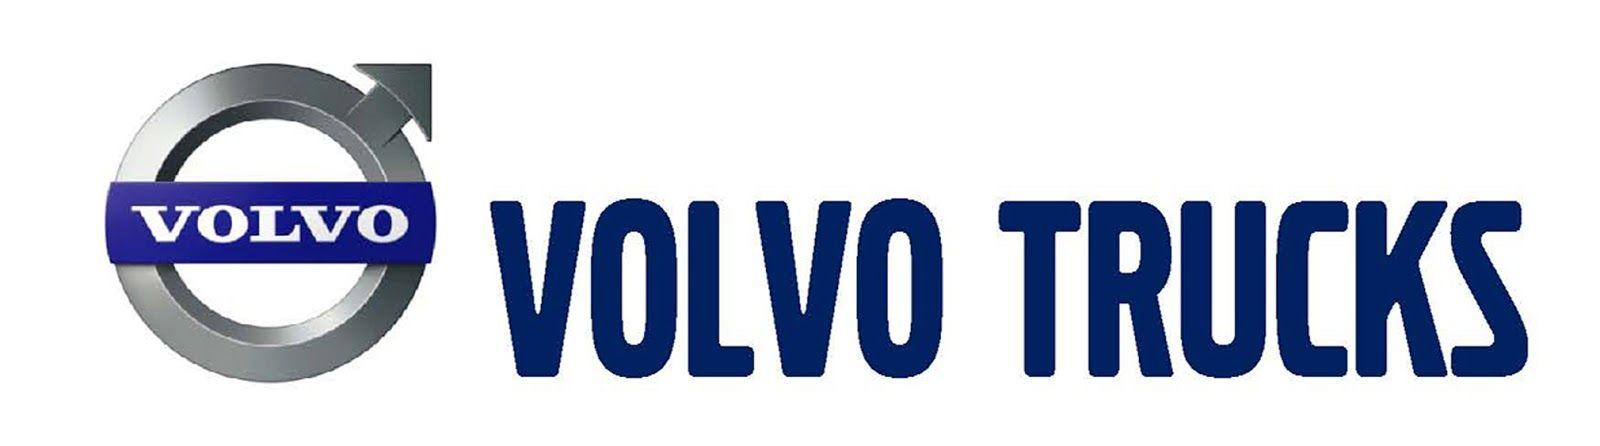 Volvo Trucks Logo - Volvo trucks Logos